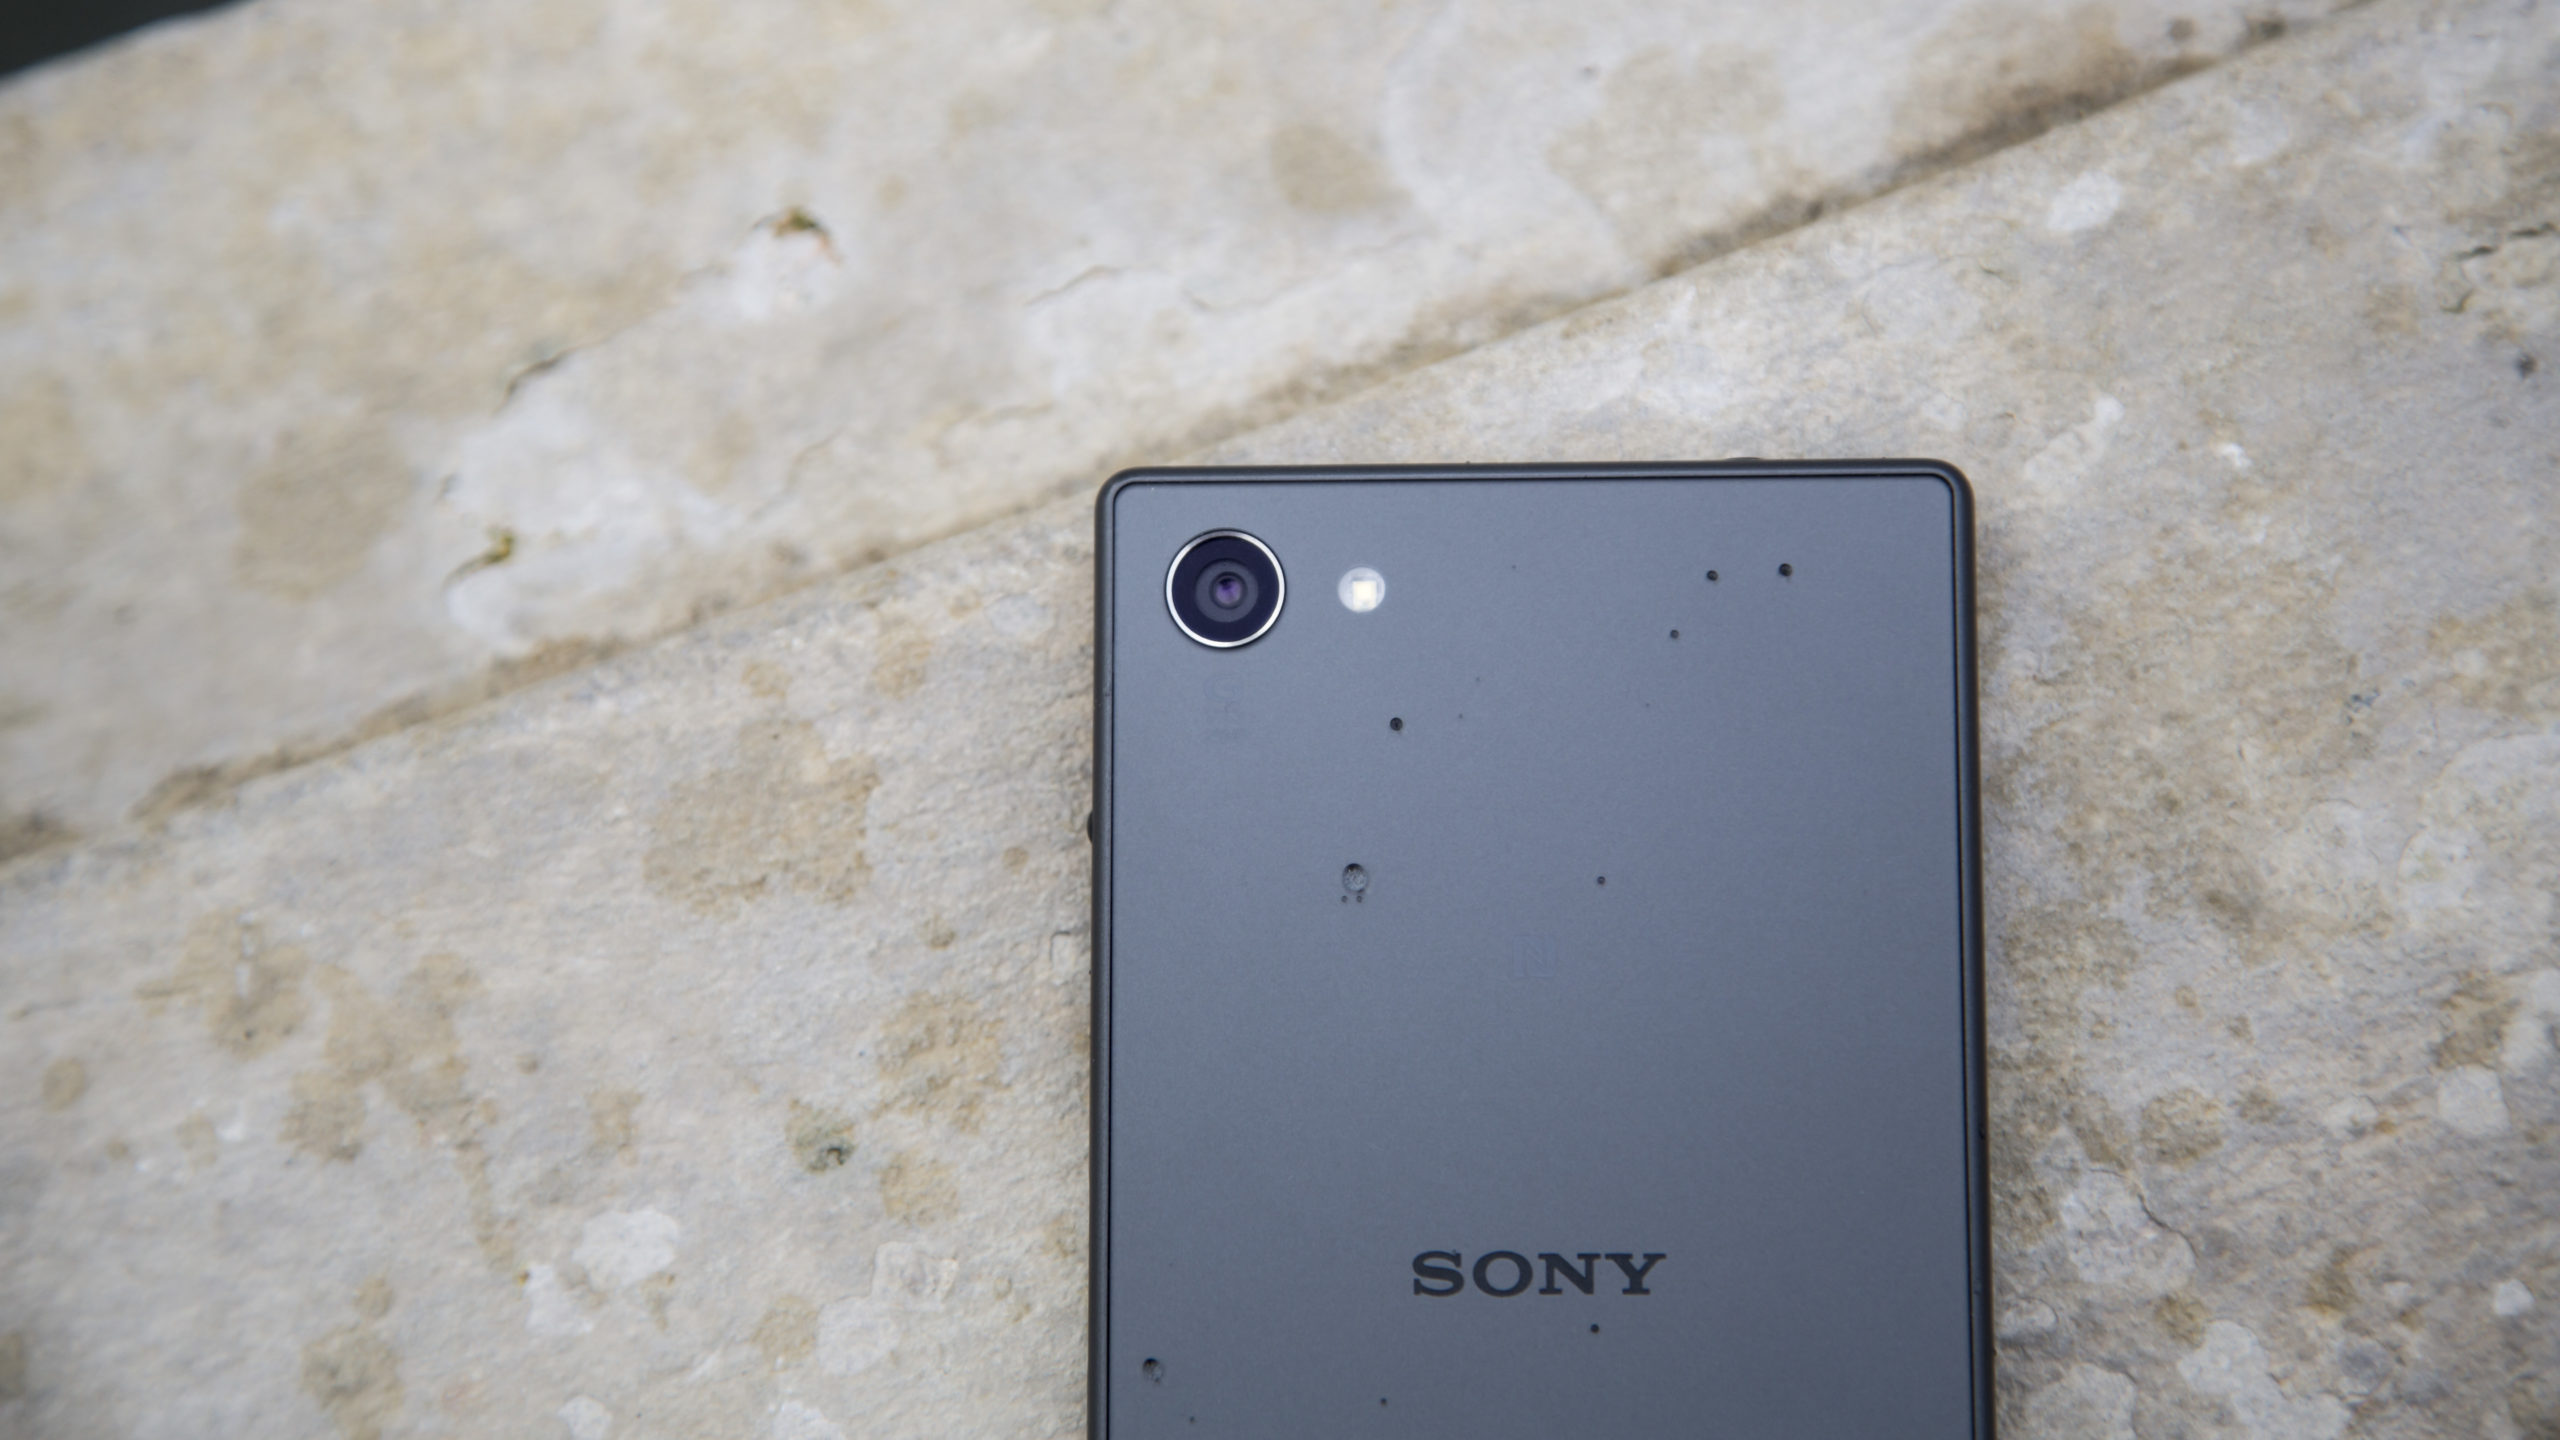 Sony Xperia Z5 Compact incelemesi: Küçük boyutlu güç merkezi bizi tekrar şaşırttı